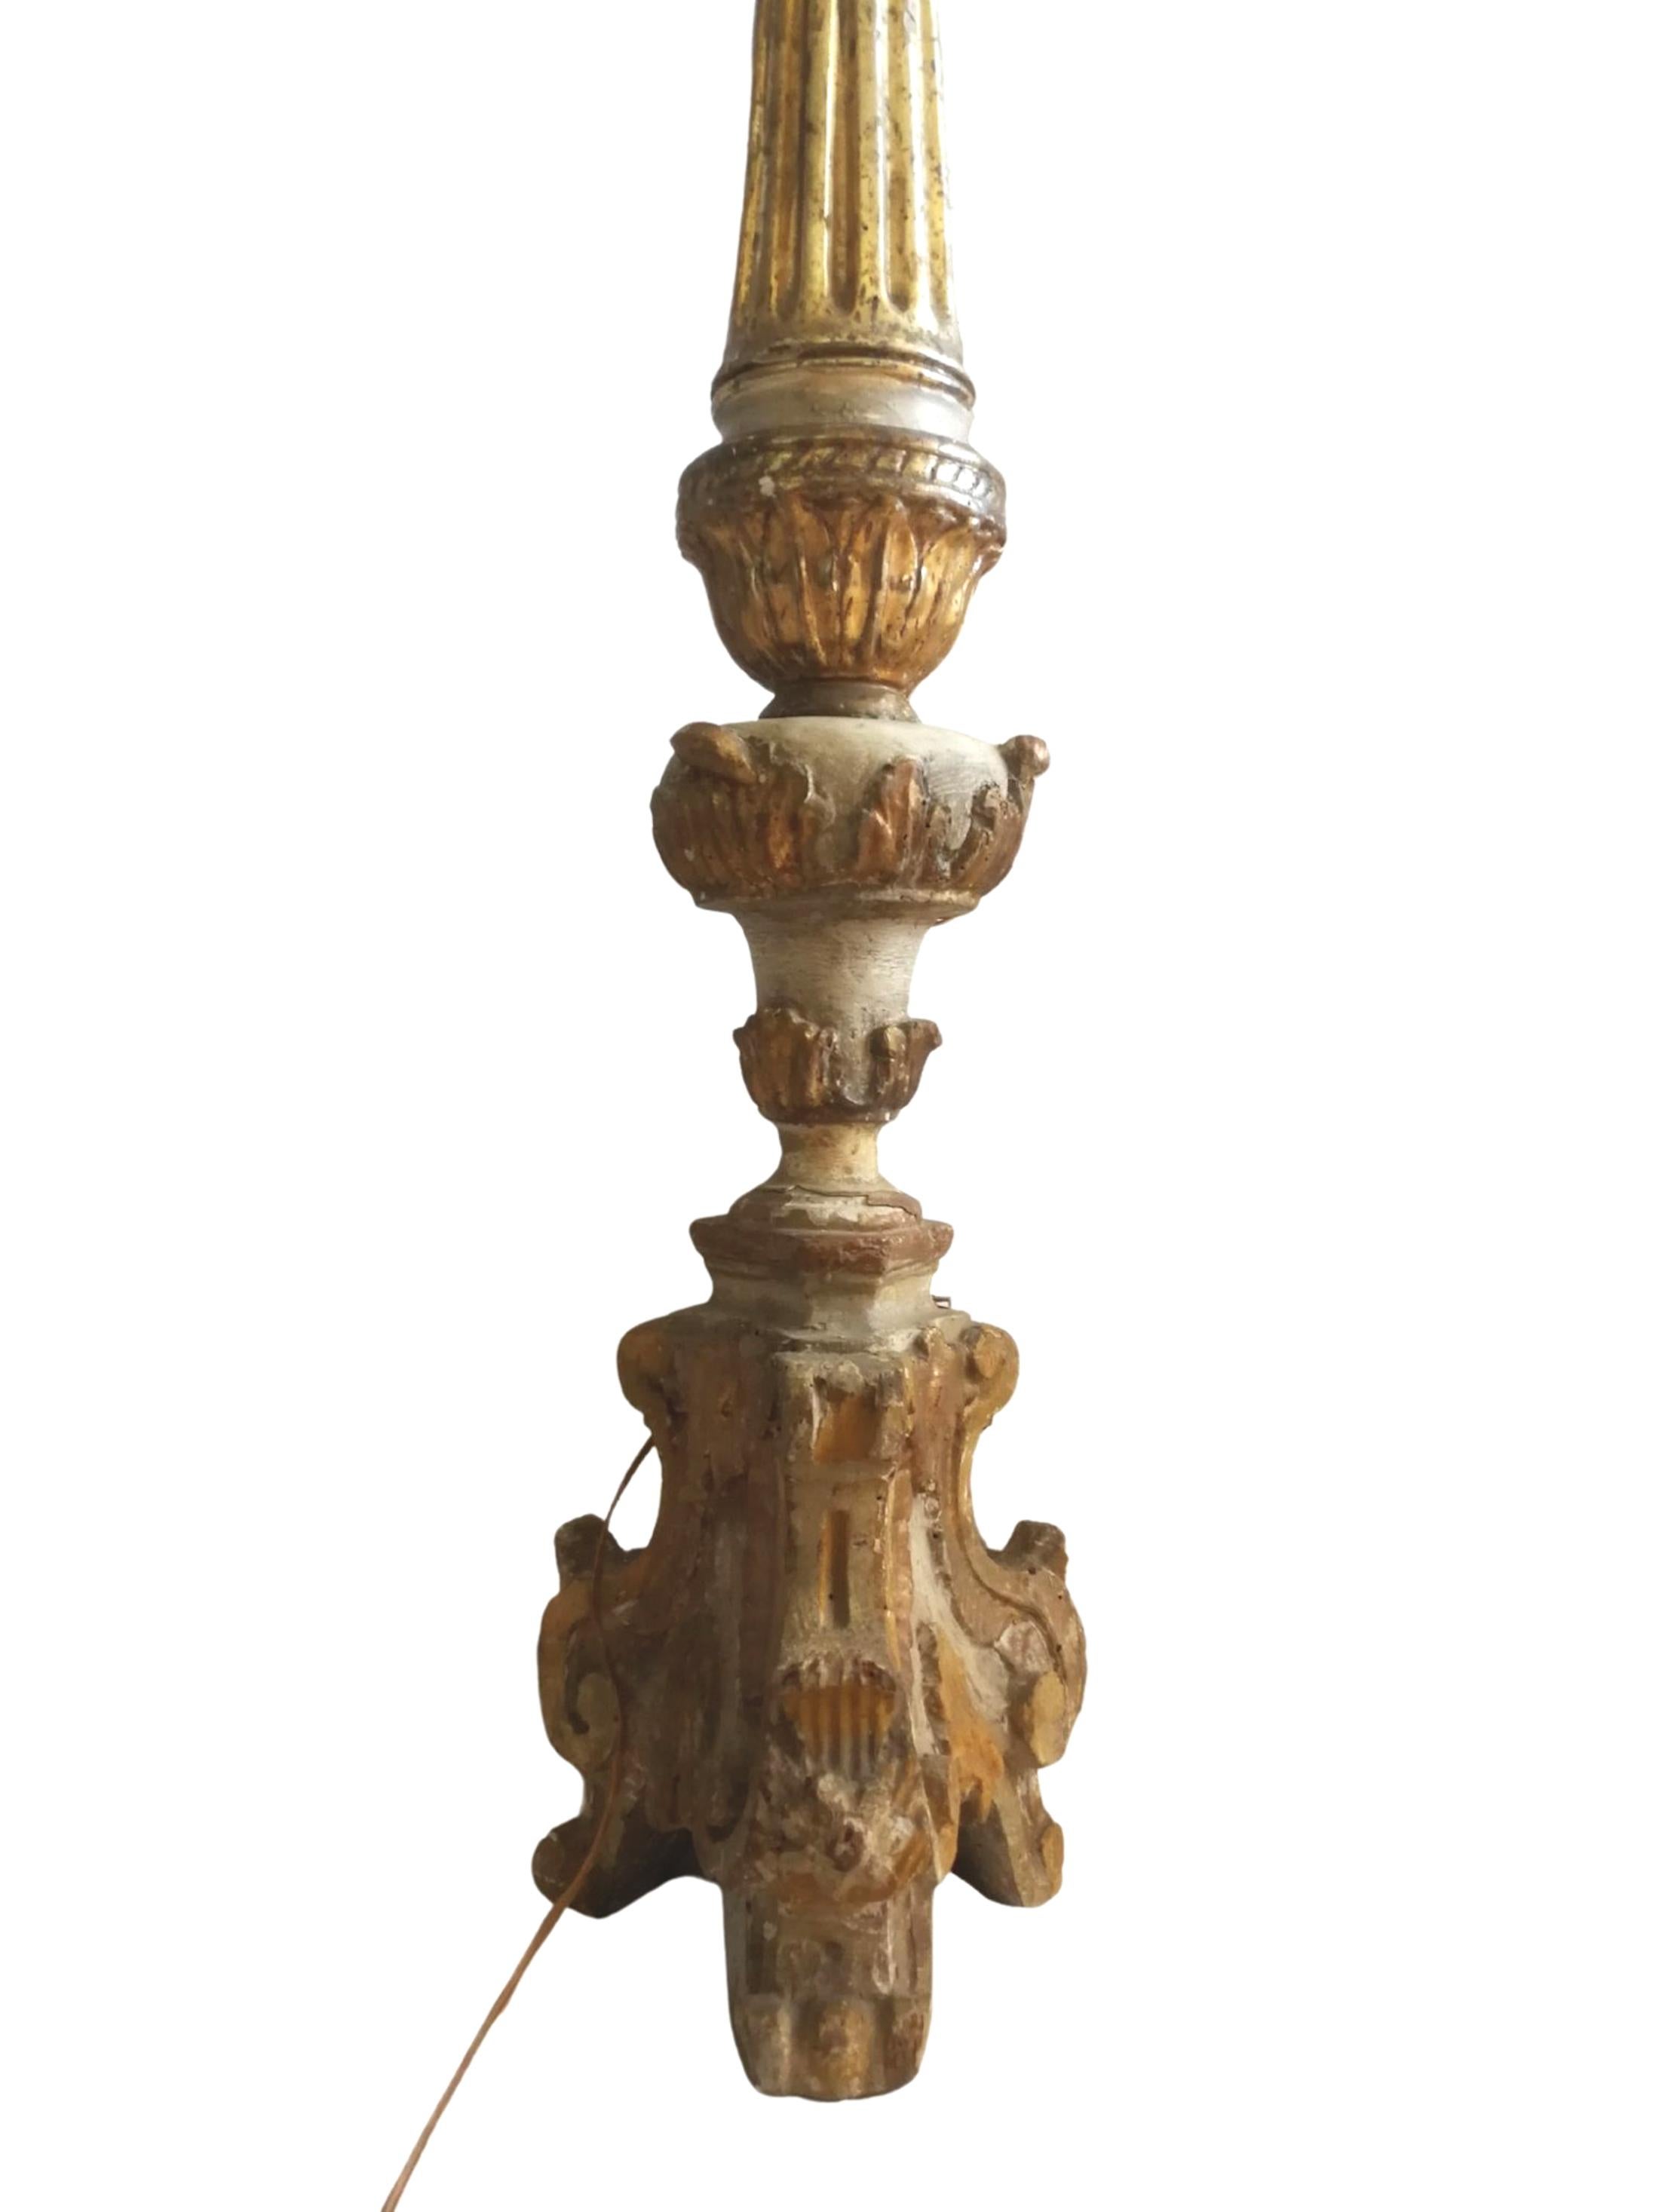 Hervorragende spanische bemalte und vergoldete Holzfackel aus dem 18.
Die untere Hälfte der Fackel ist handgeschnitzt und mit Pflanzen- und Akanthusdekor versehen. Der obere Teil des Korpus ist im Louis-XVI-Stil geriffelt und wird von einer